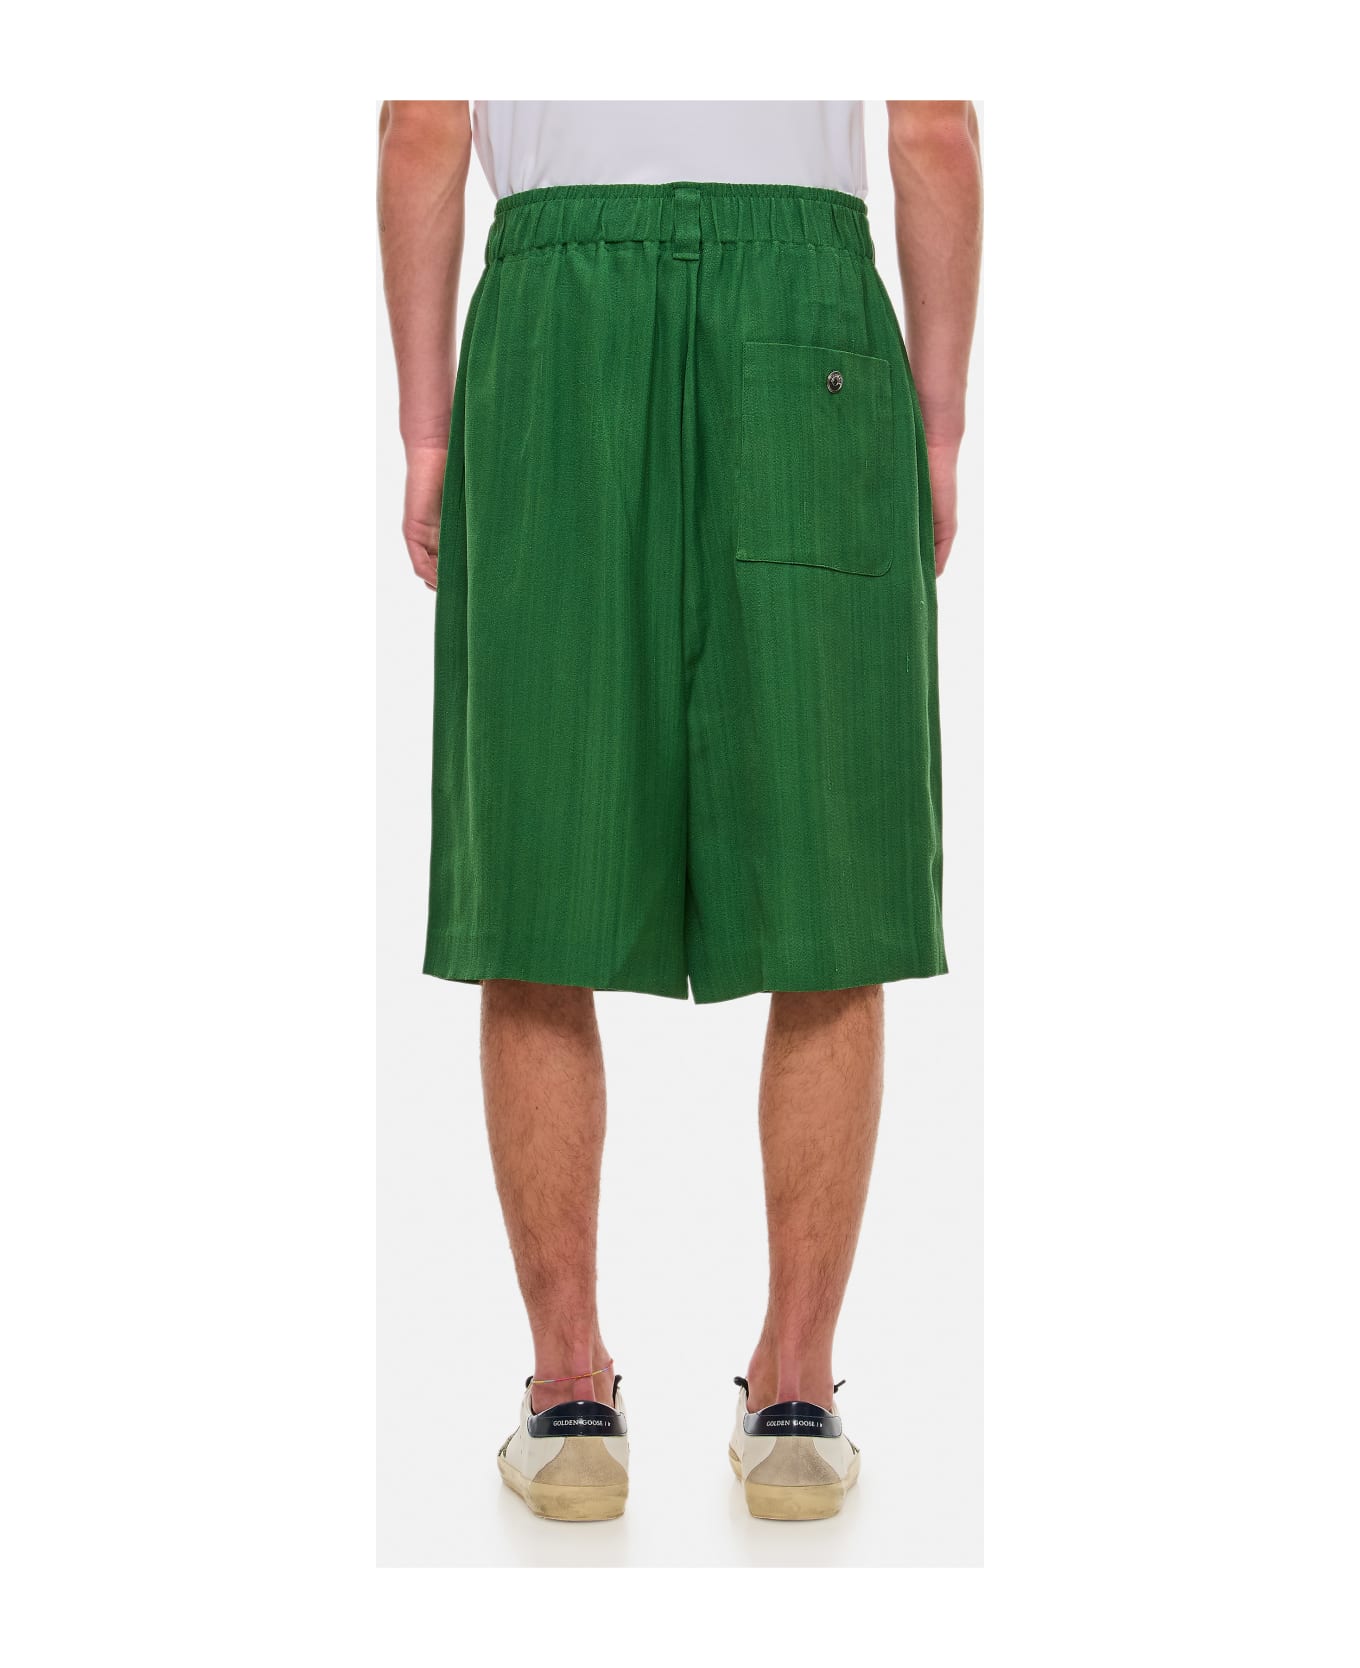 Jacquemus Juego Shorts - Green